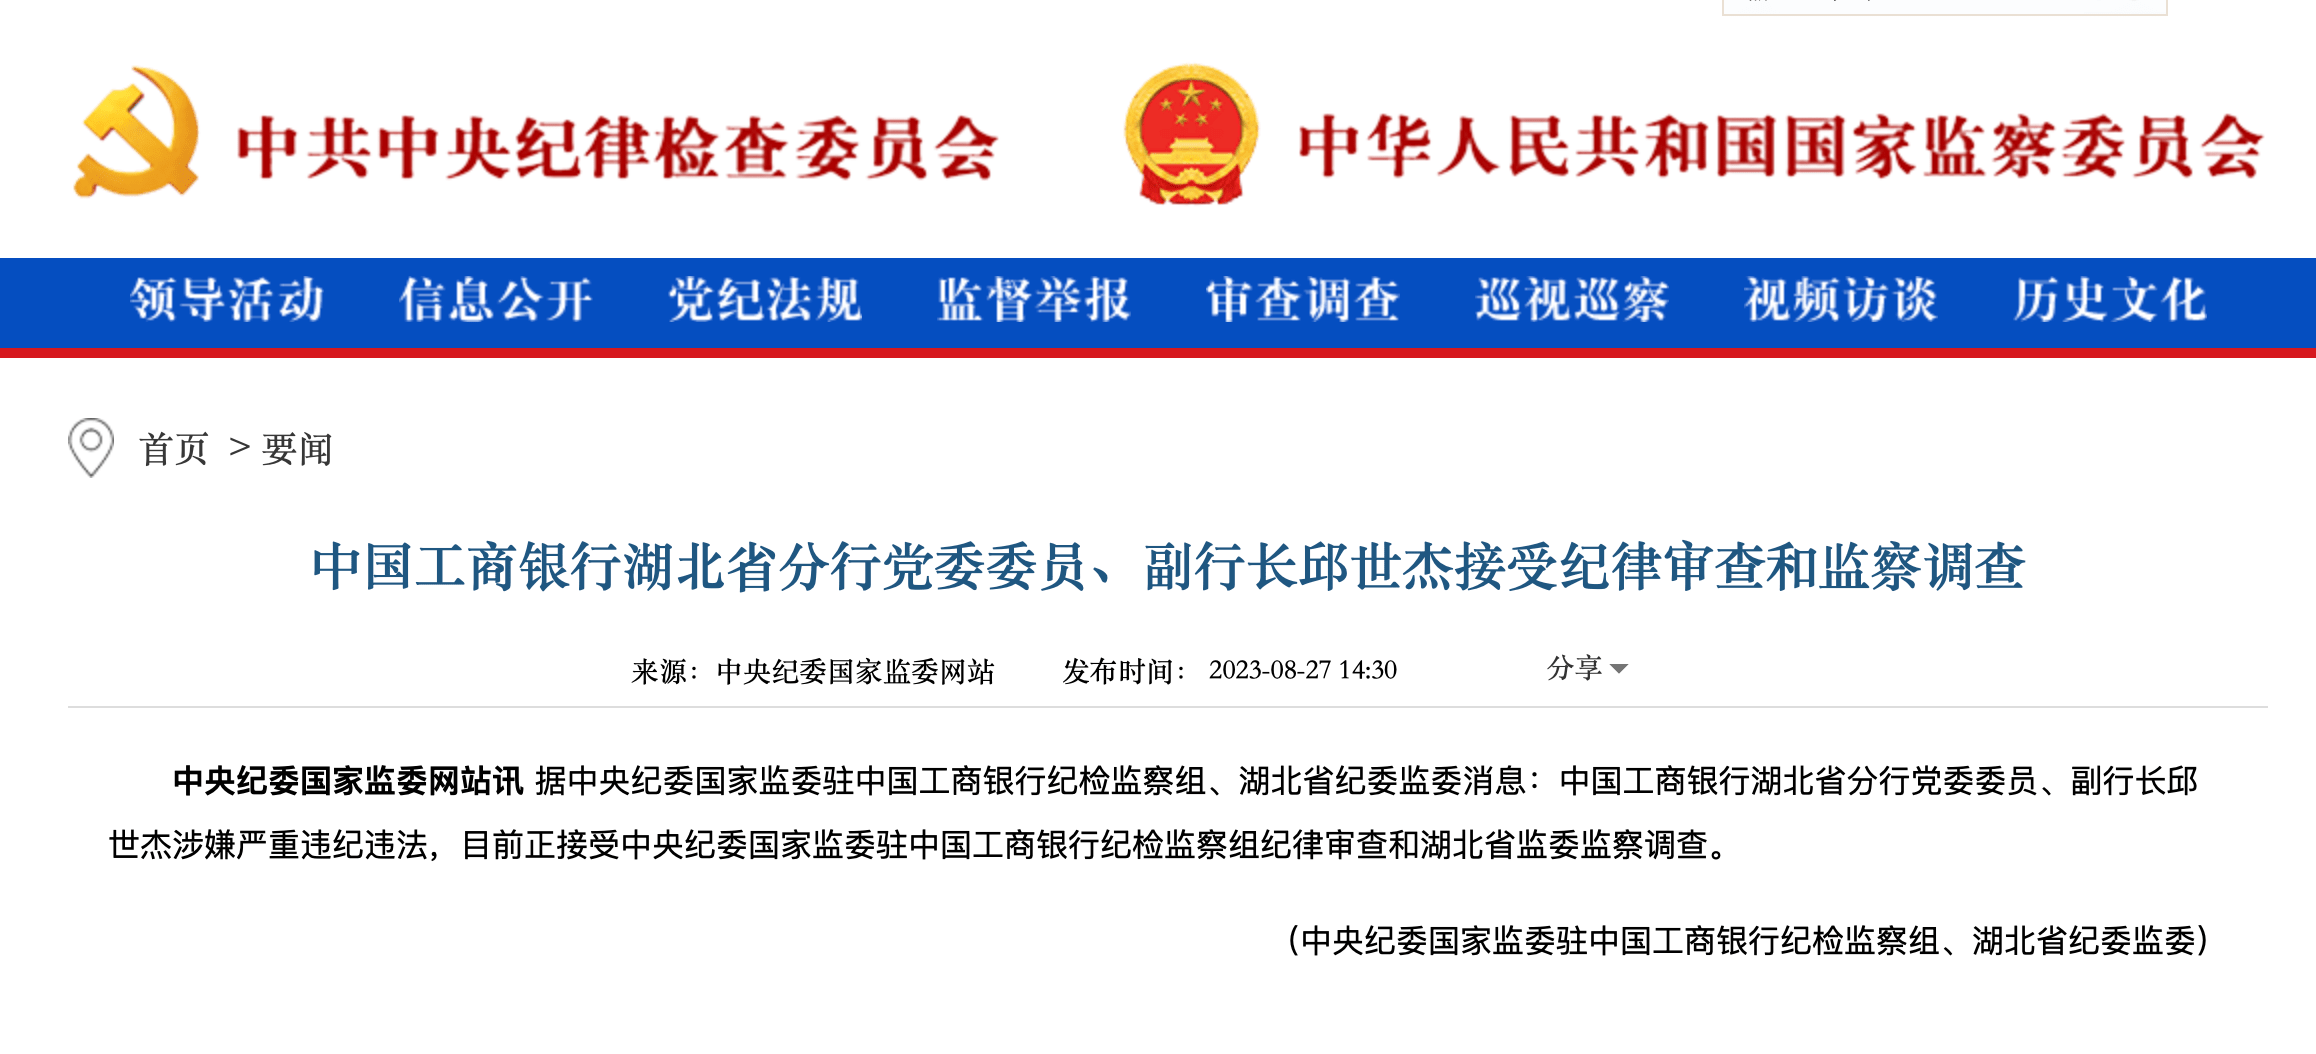 中国海装召开2023年党风廉政建设和反腐败工作大会 -- 中国船舶集团海装风电股份有限公司